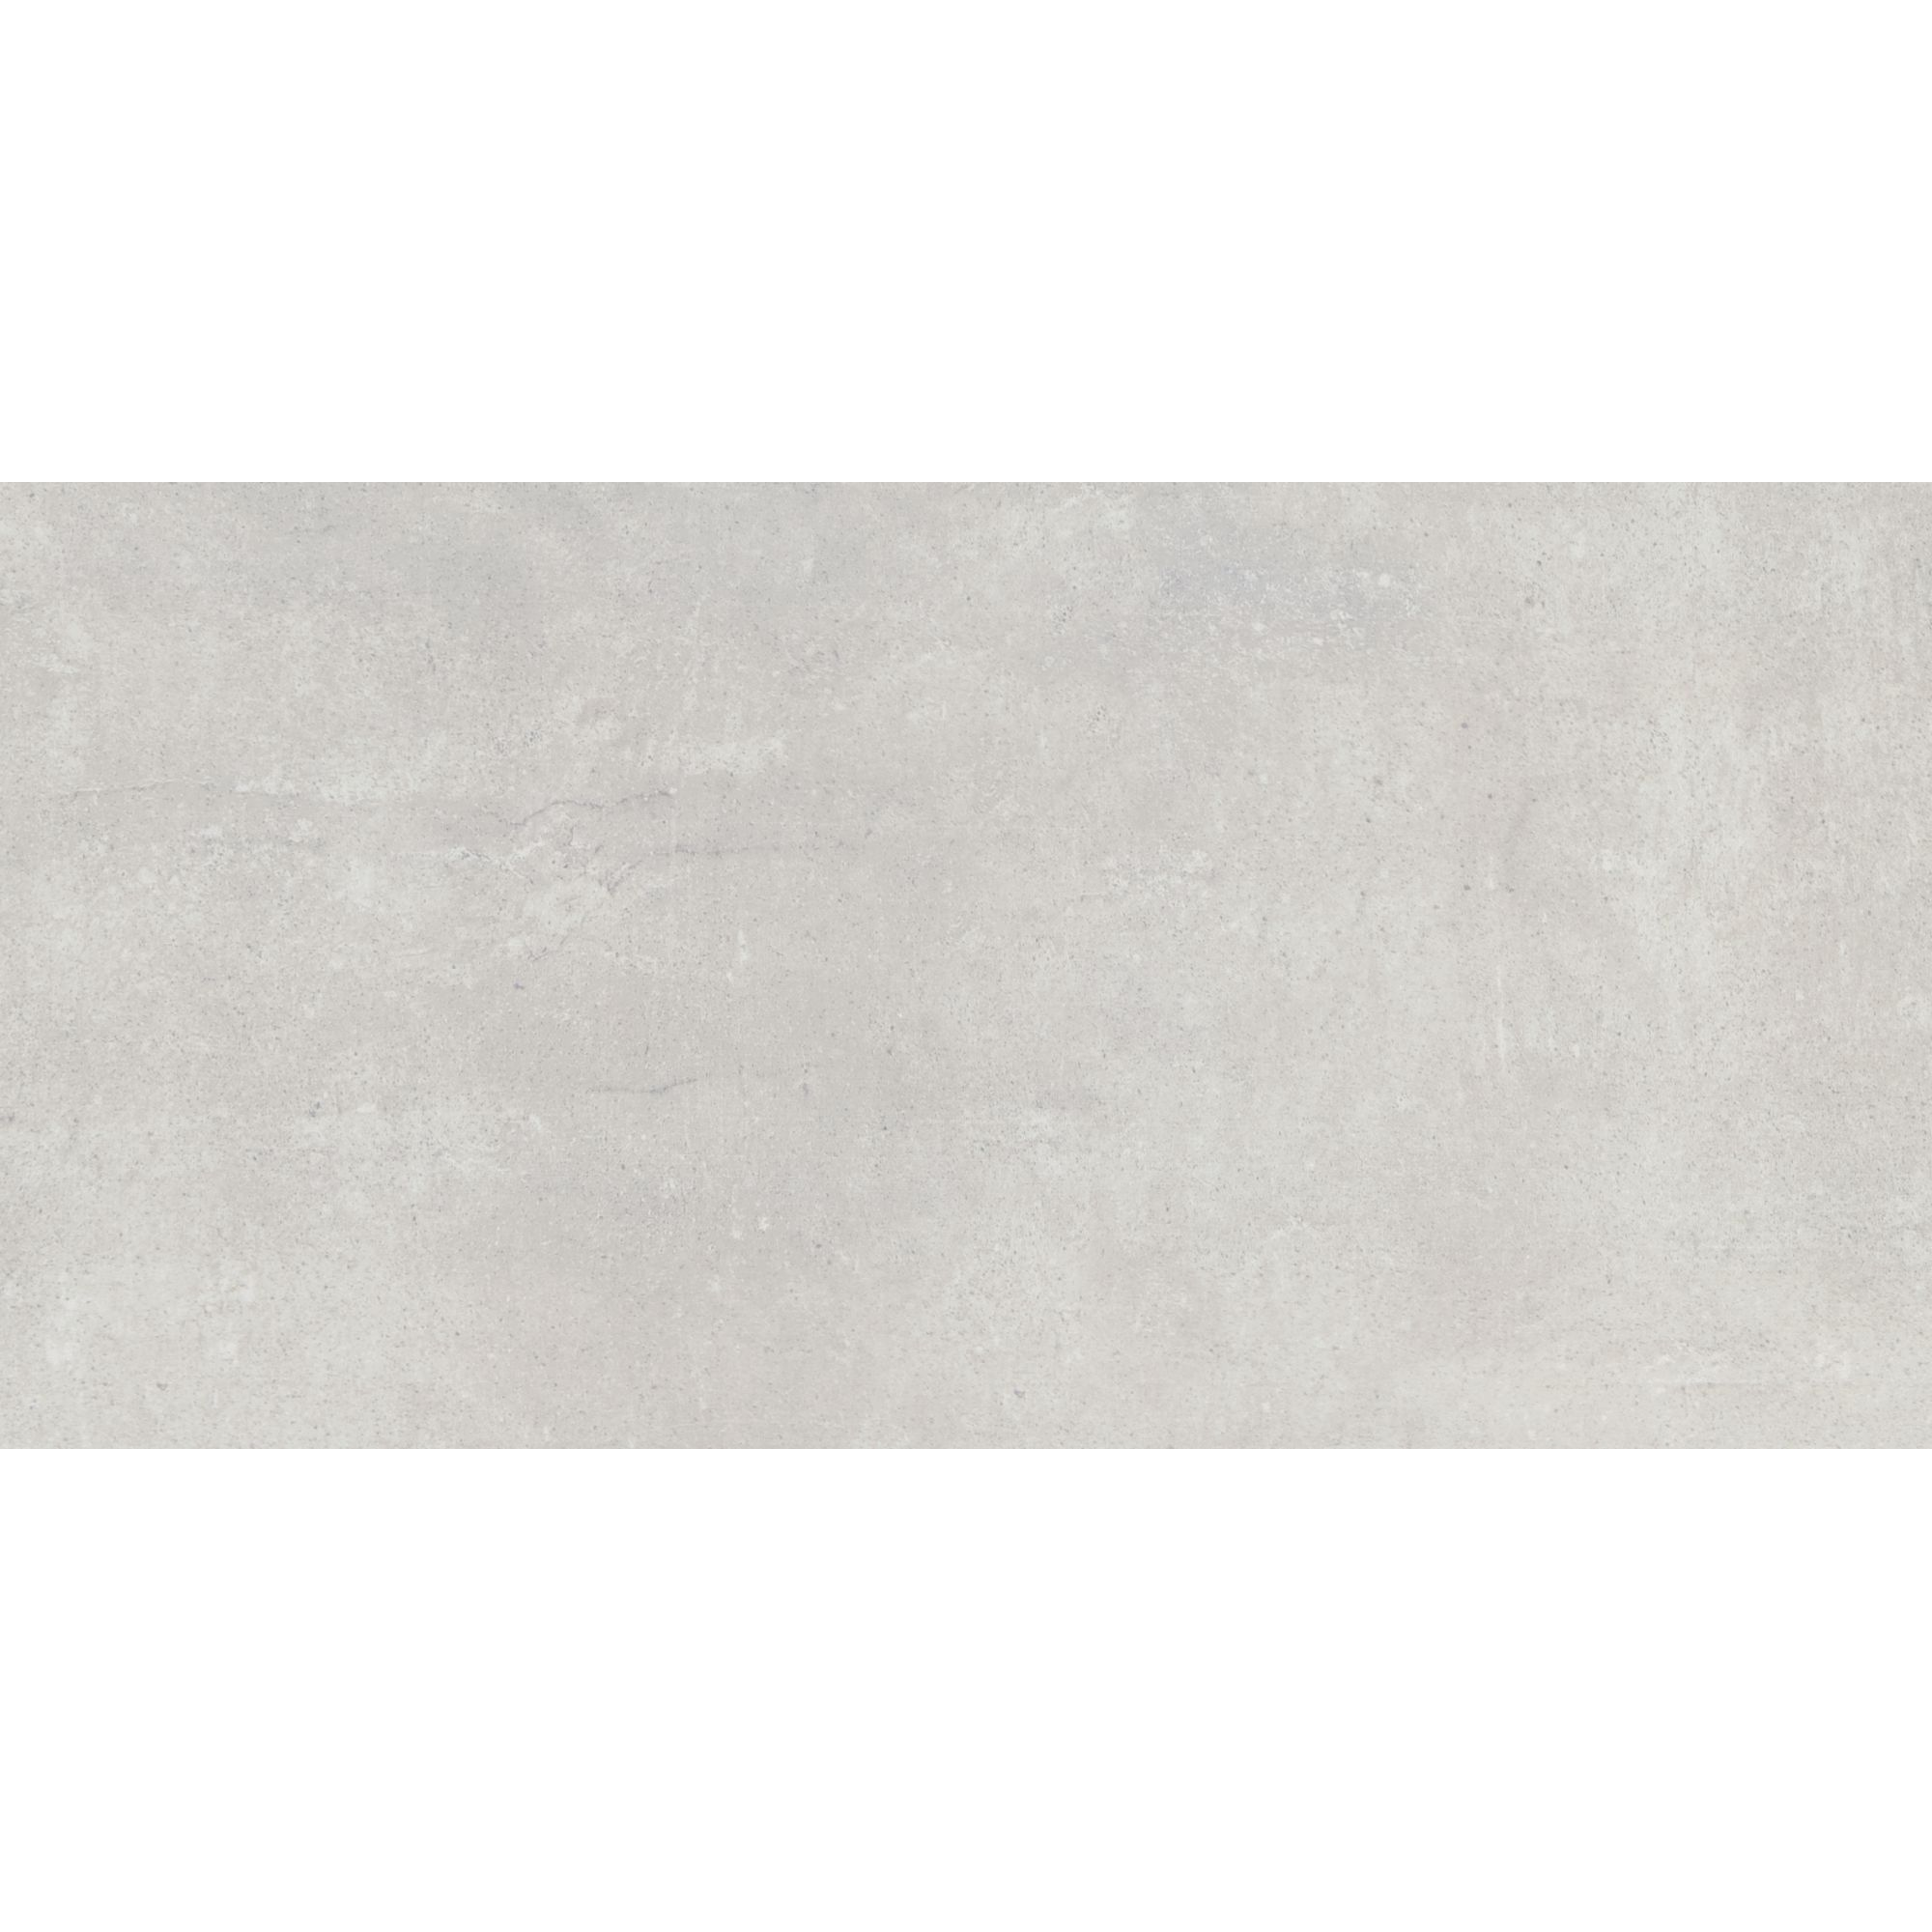 Bodenfliese 'Beton Grigio' Feinsteinzeug 30,5 x 61 cm grau + product picture